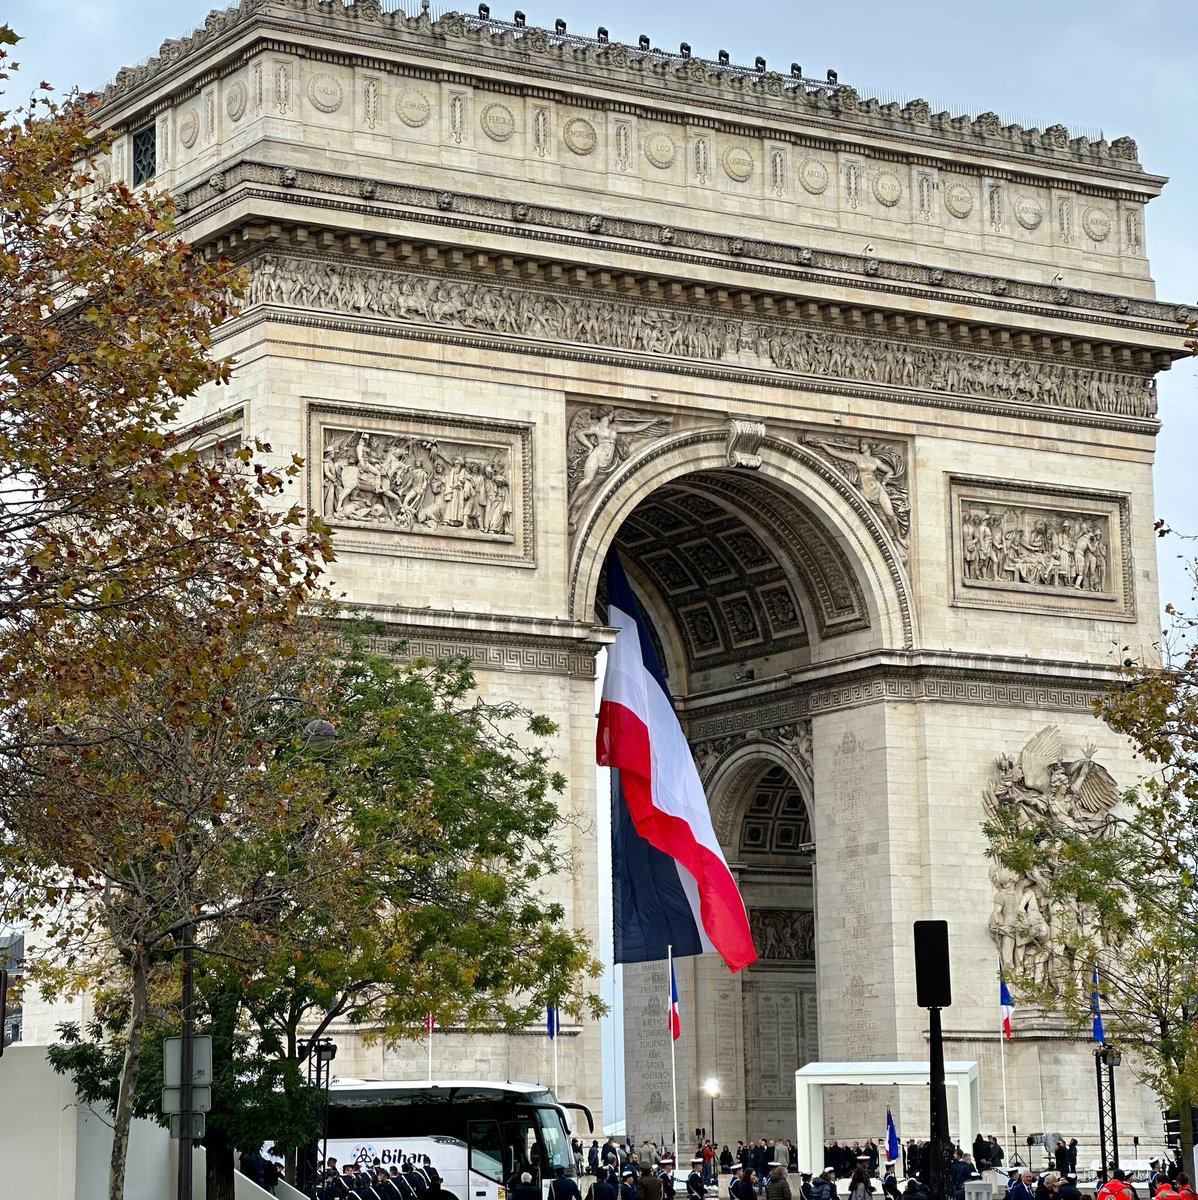 Commémoration de l’armistice, ce samedi #11novembre à Paris.🇫🇷

Hommage à nos soldats, nos héros, ceux qui se sont battus pour notre liberté et pour que la France reste la France.🙌🏻 

Leurs efforts, leur dévouement et leur sacrifice nous obligent autant qu’ils nous inspirent.🙏🏻